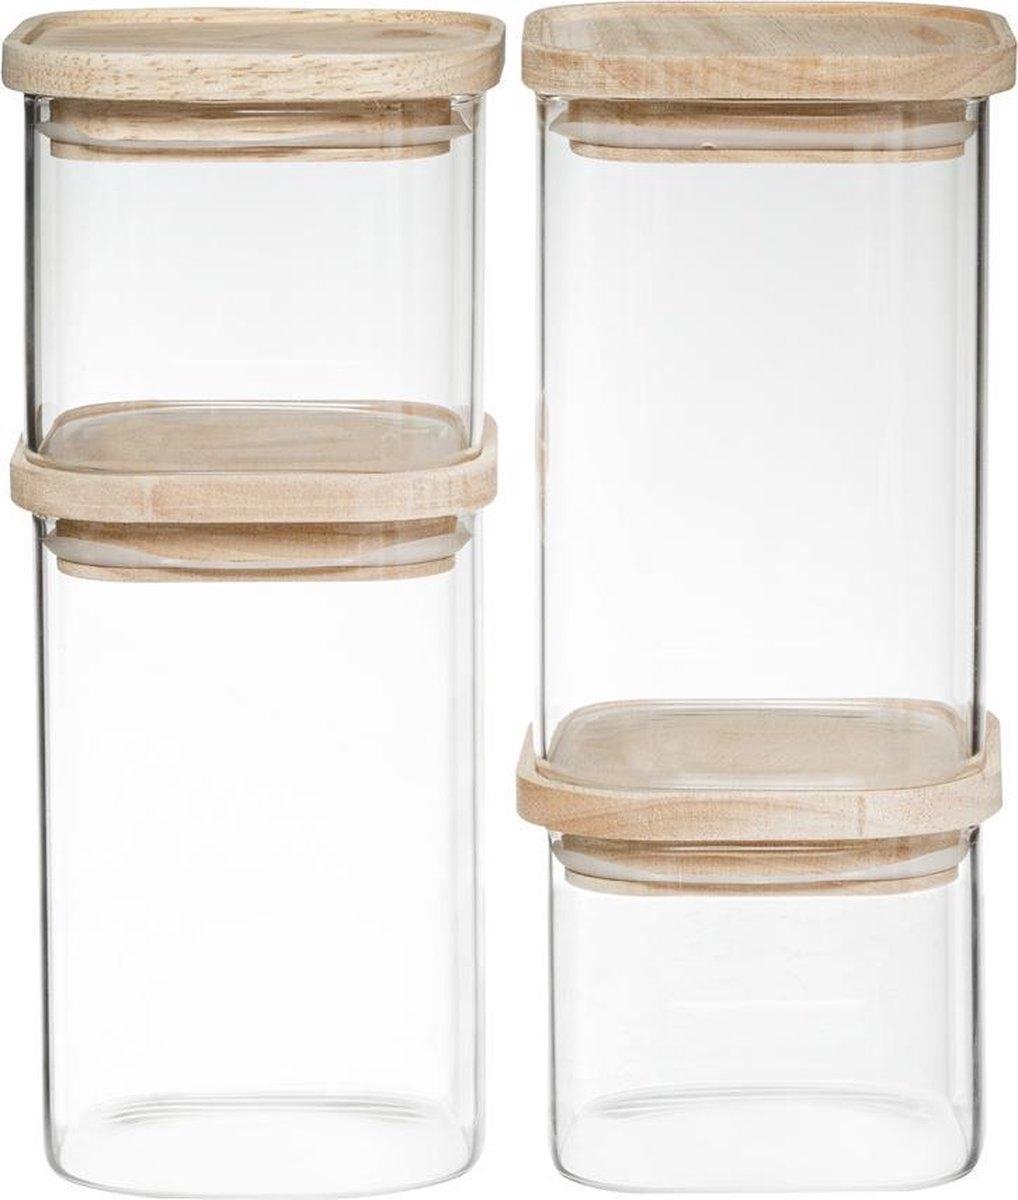 Voorraadpotten |  Glas met bamboe deksel |  0.5L - 1L | Set van 4 | Voorraadbussen | Stapelbaar  | Luchtdicht deksel